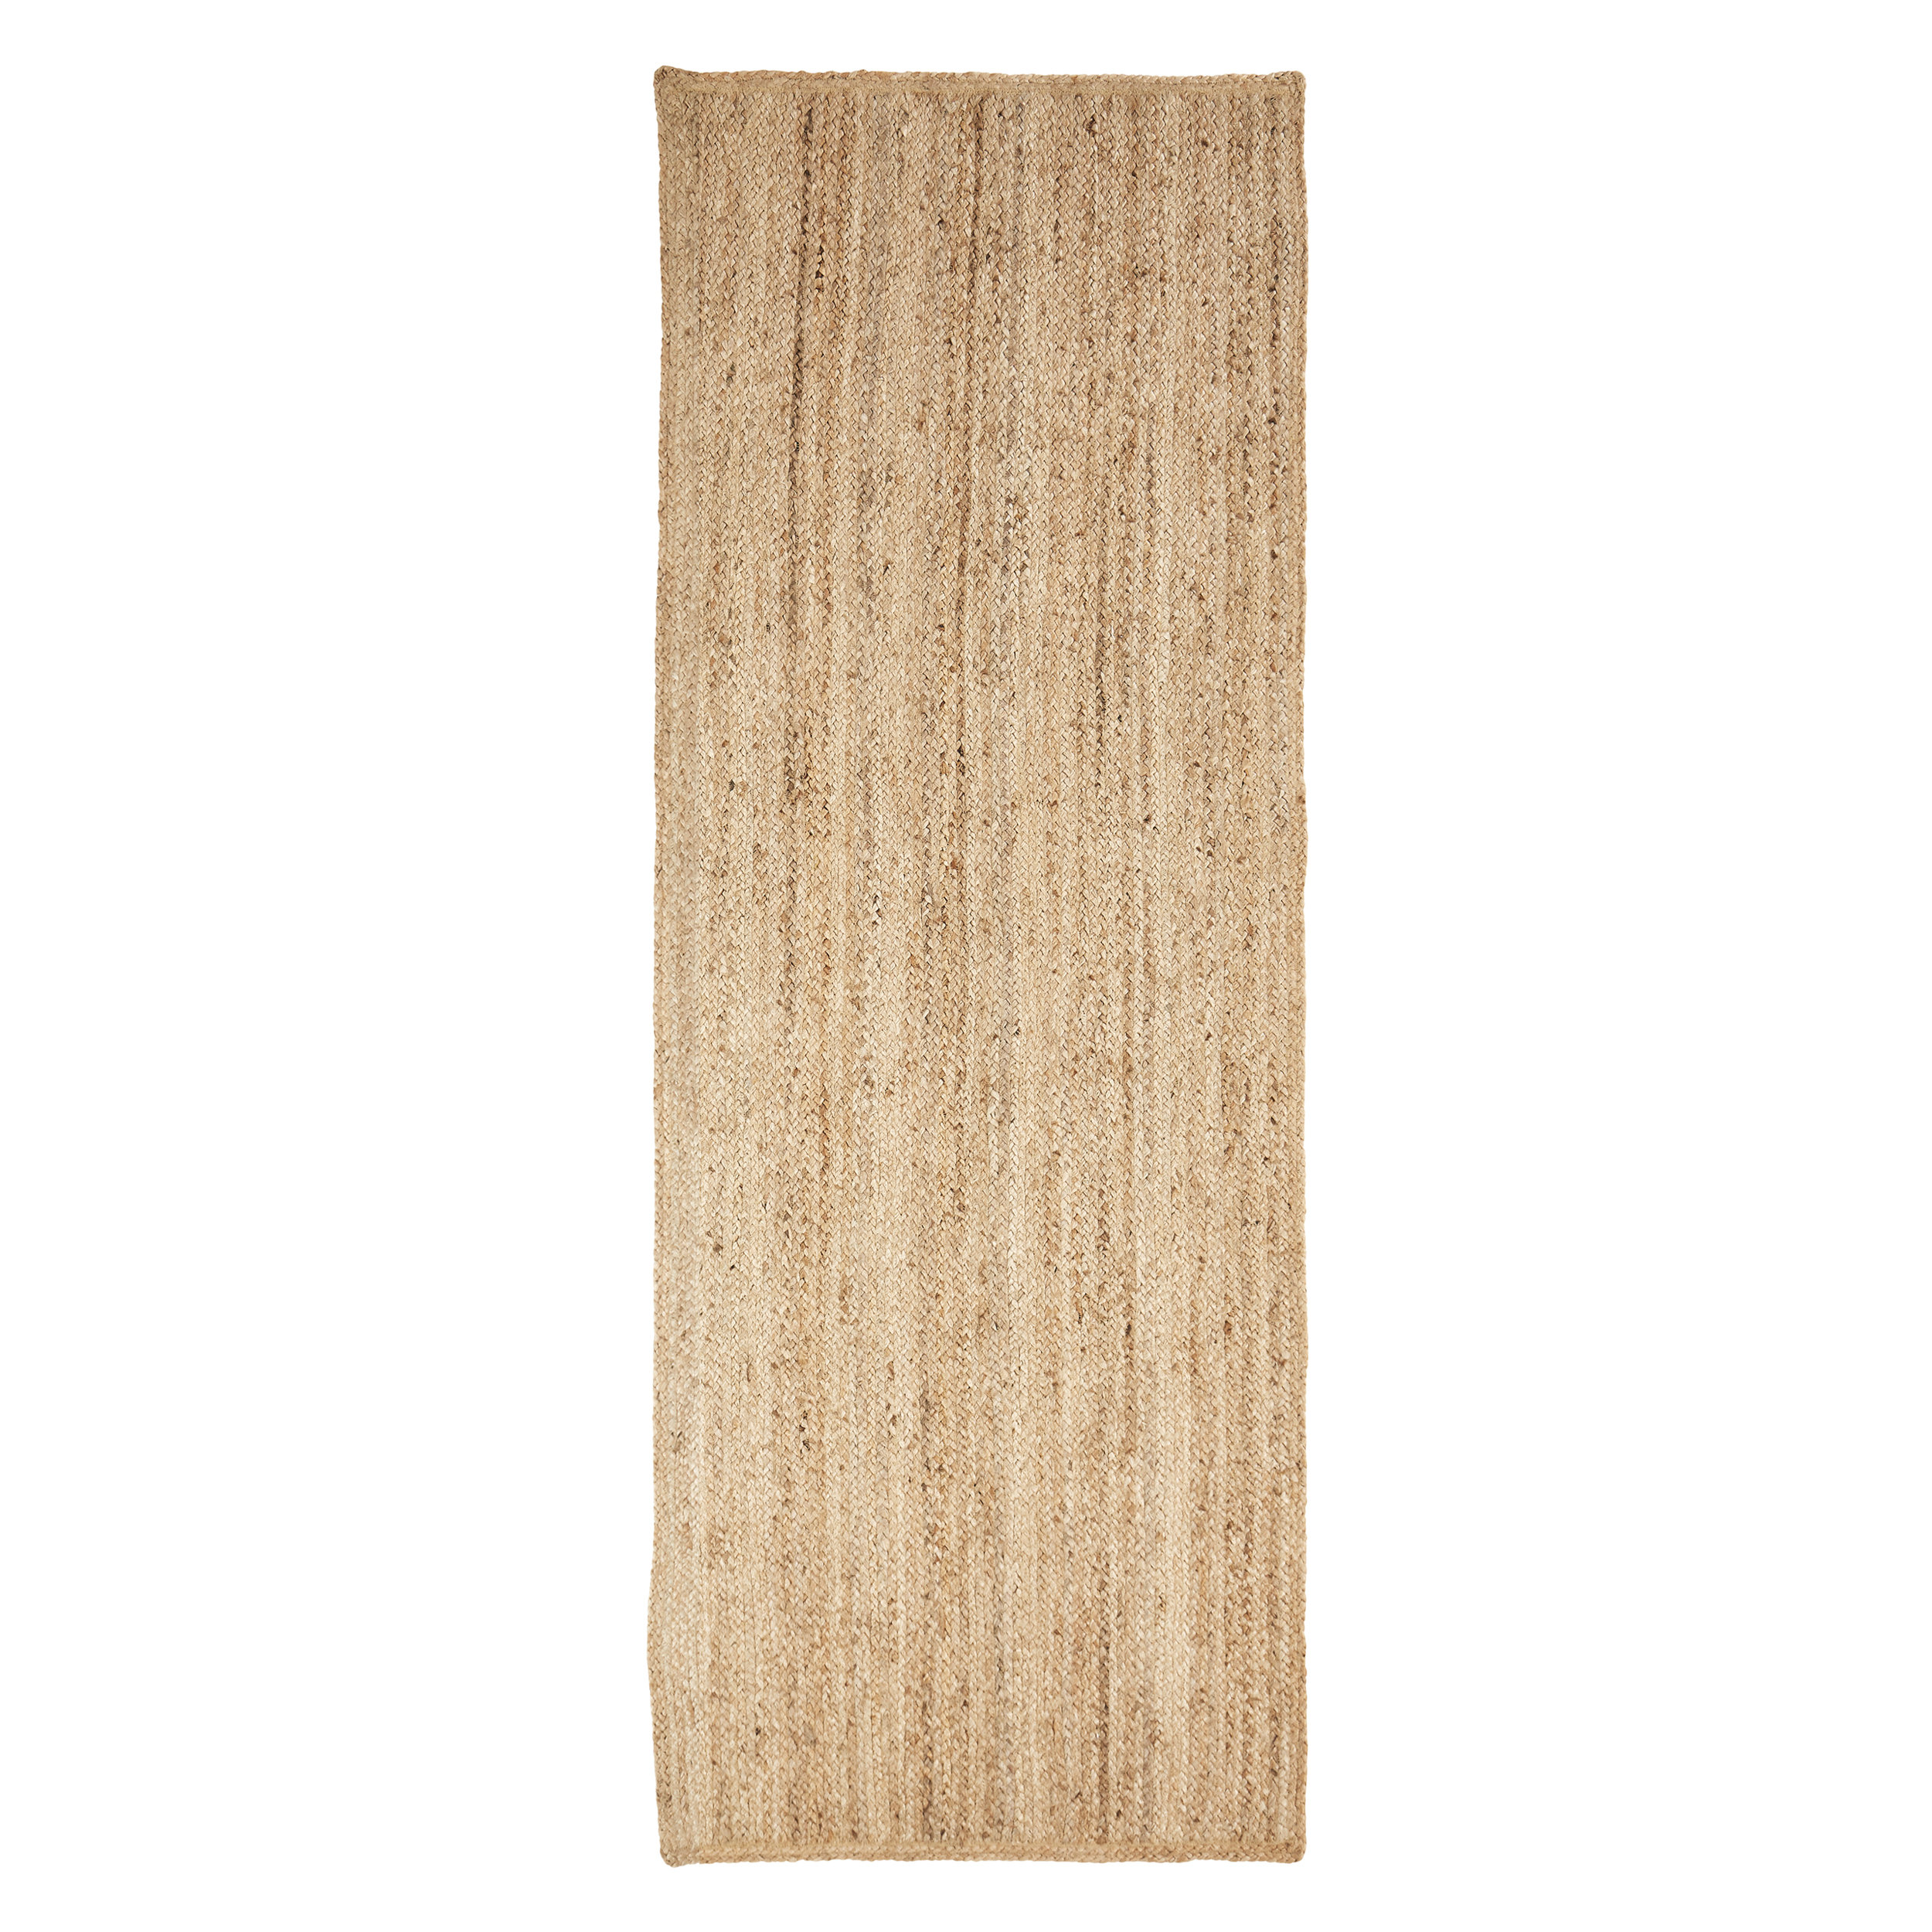 Rug 100% Jute Rectangle Natural Braided Floor Mat Handmade Reversible Runner Rug 